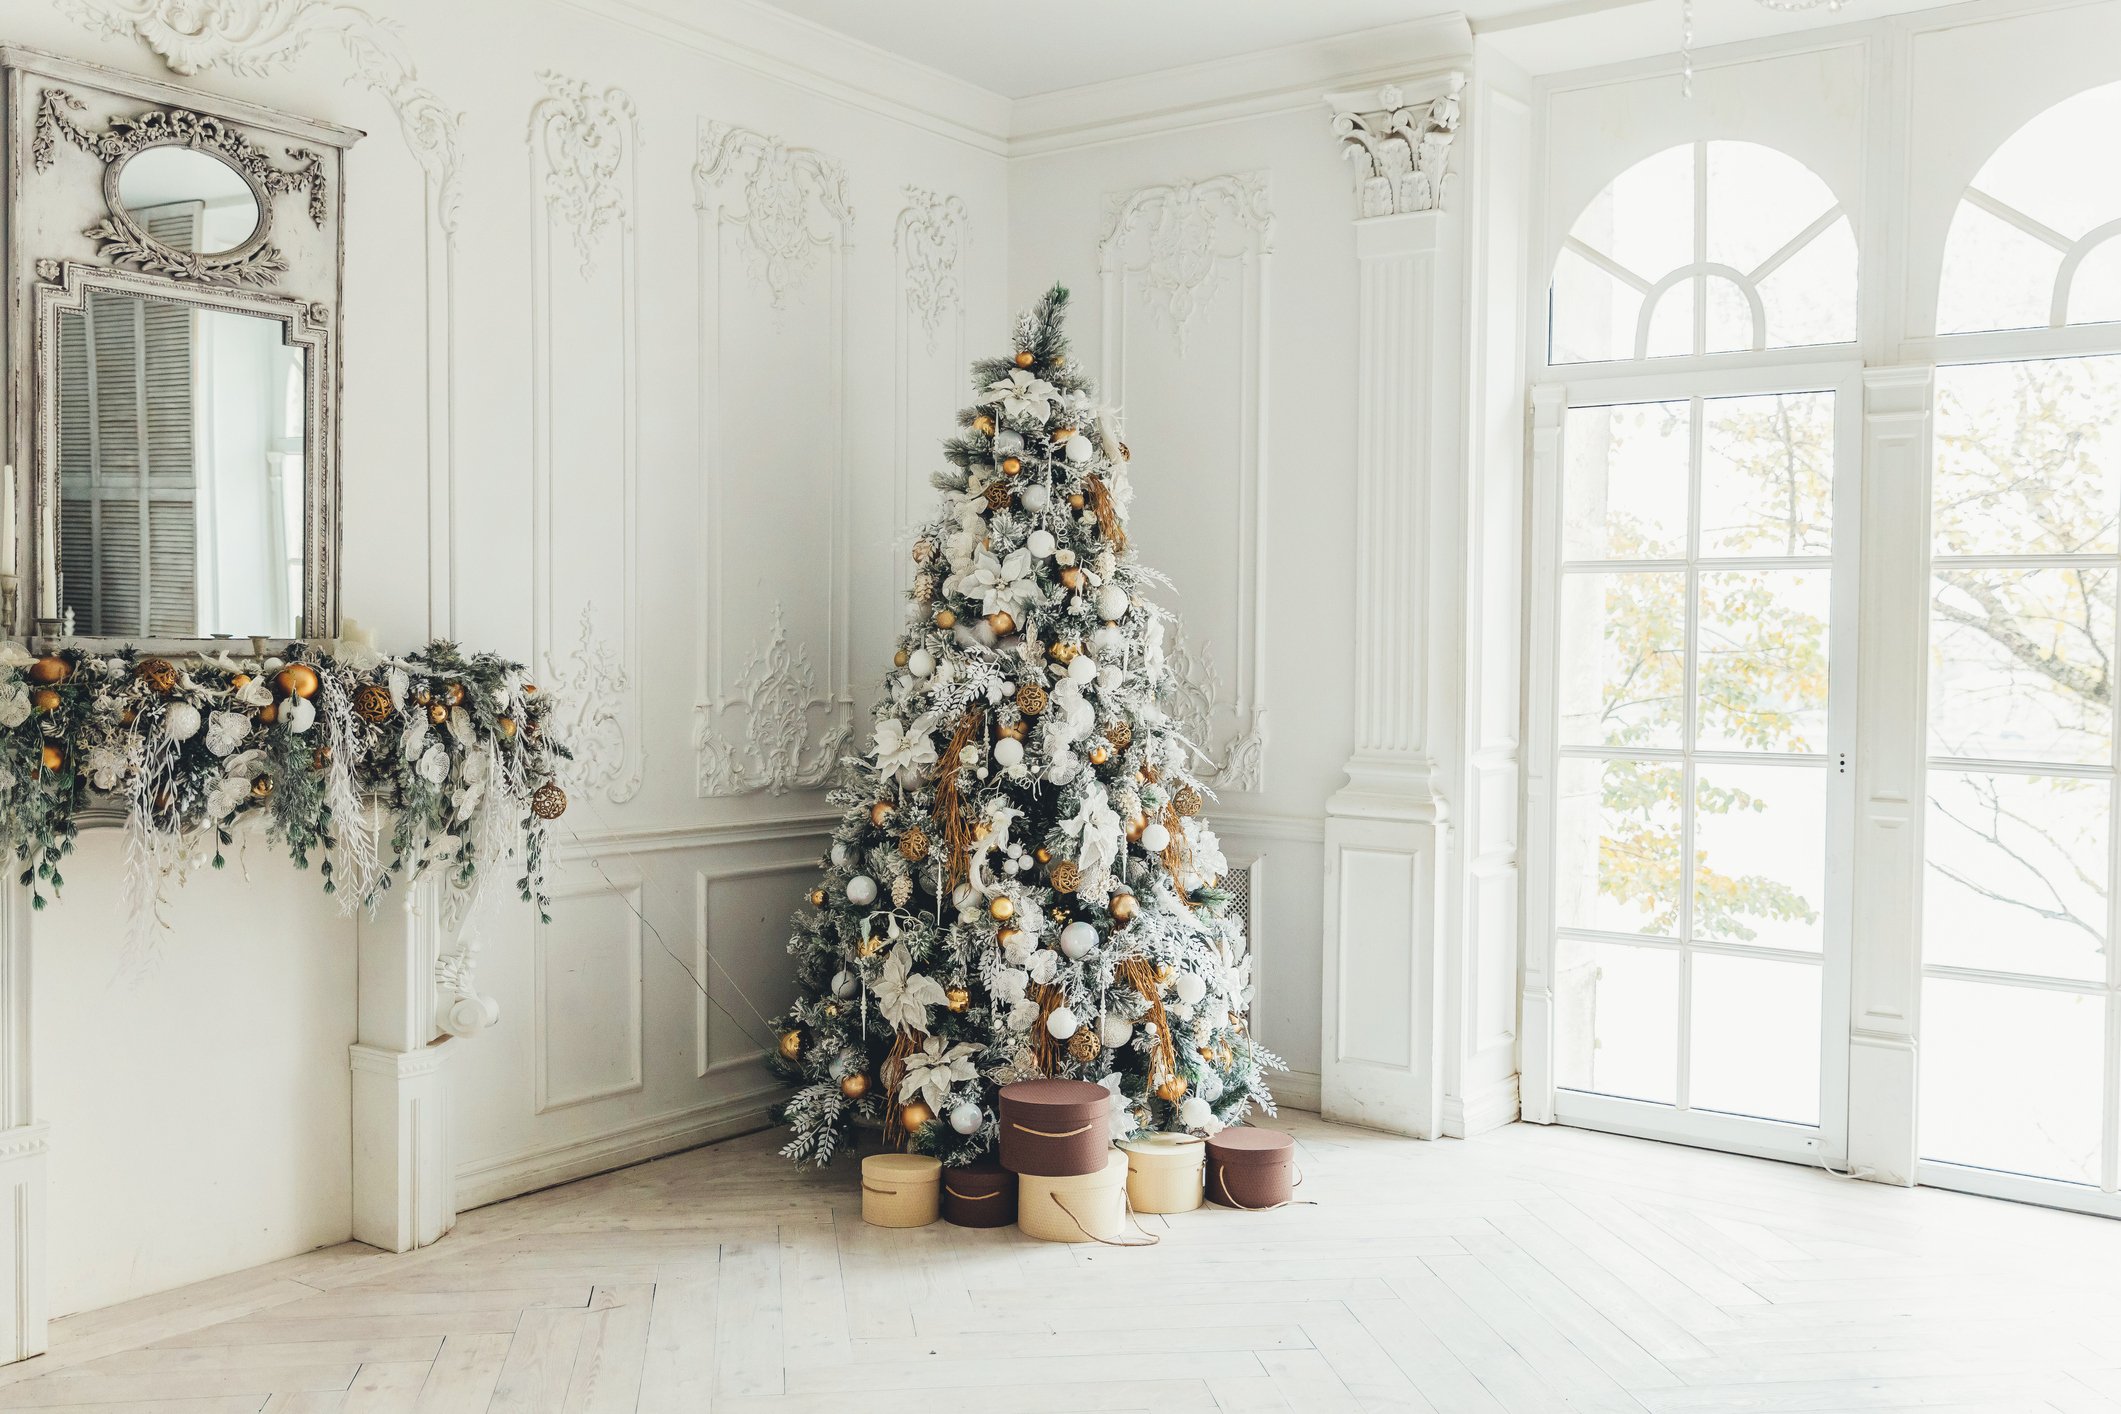 Το απίθανο κόλπο που πρέπει να ακολουθήσεις για να φαίνεται το χριστουγεννιάτικο δέντρο σου πιο ακριβό και γεμάτο